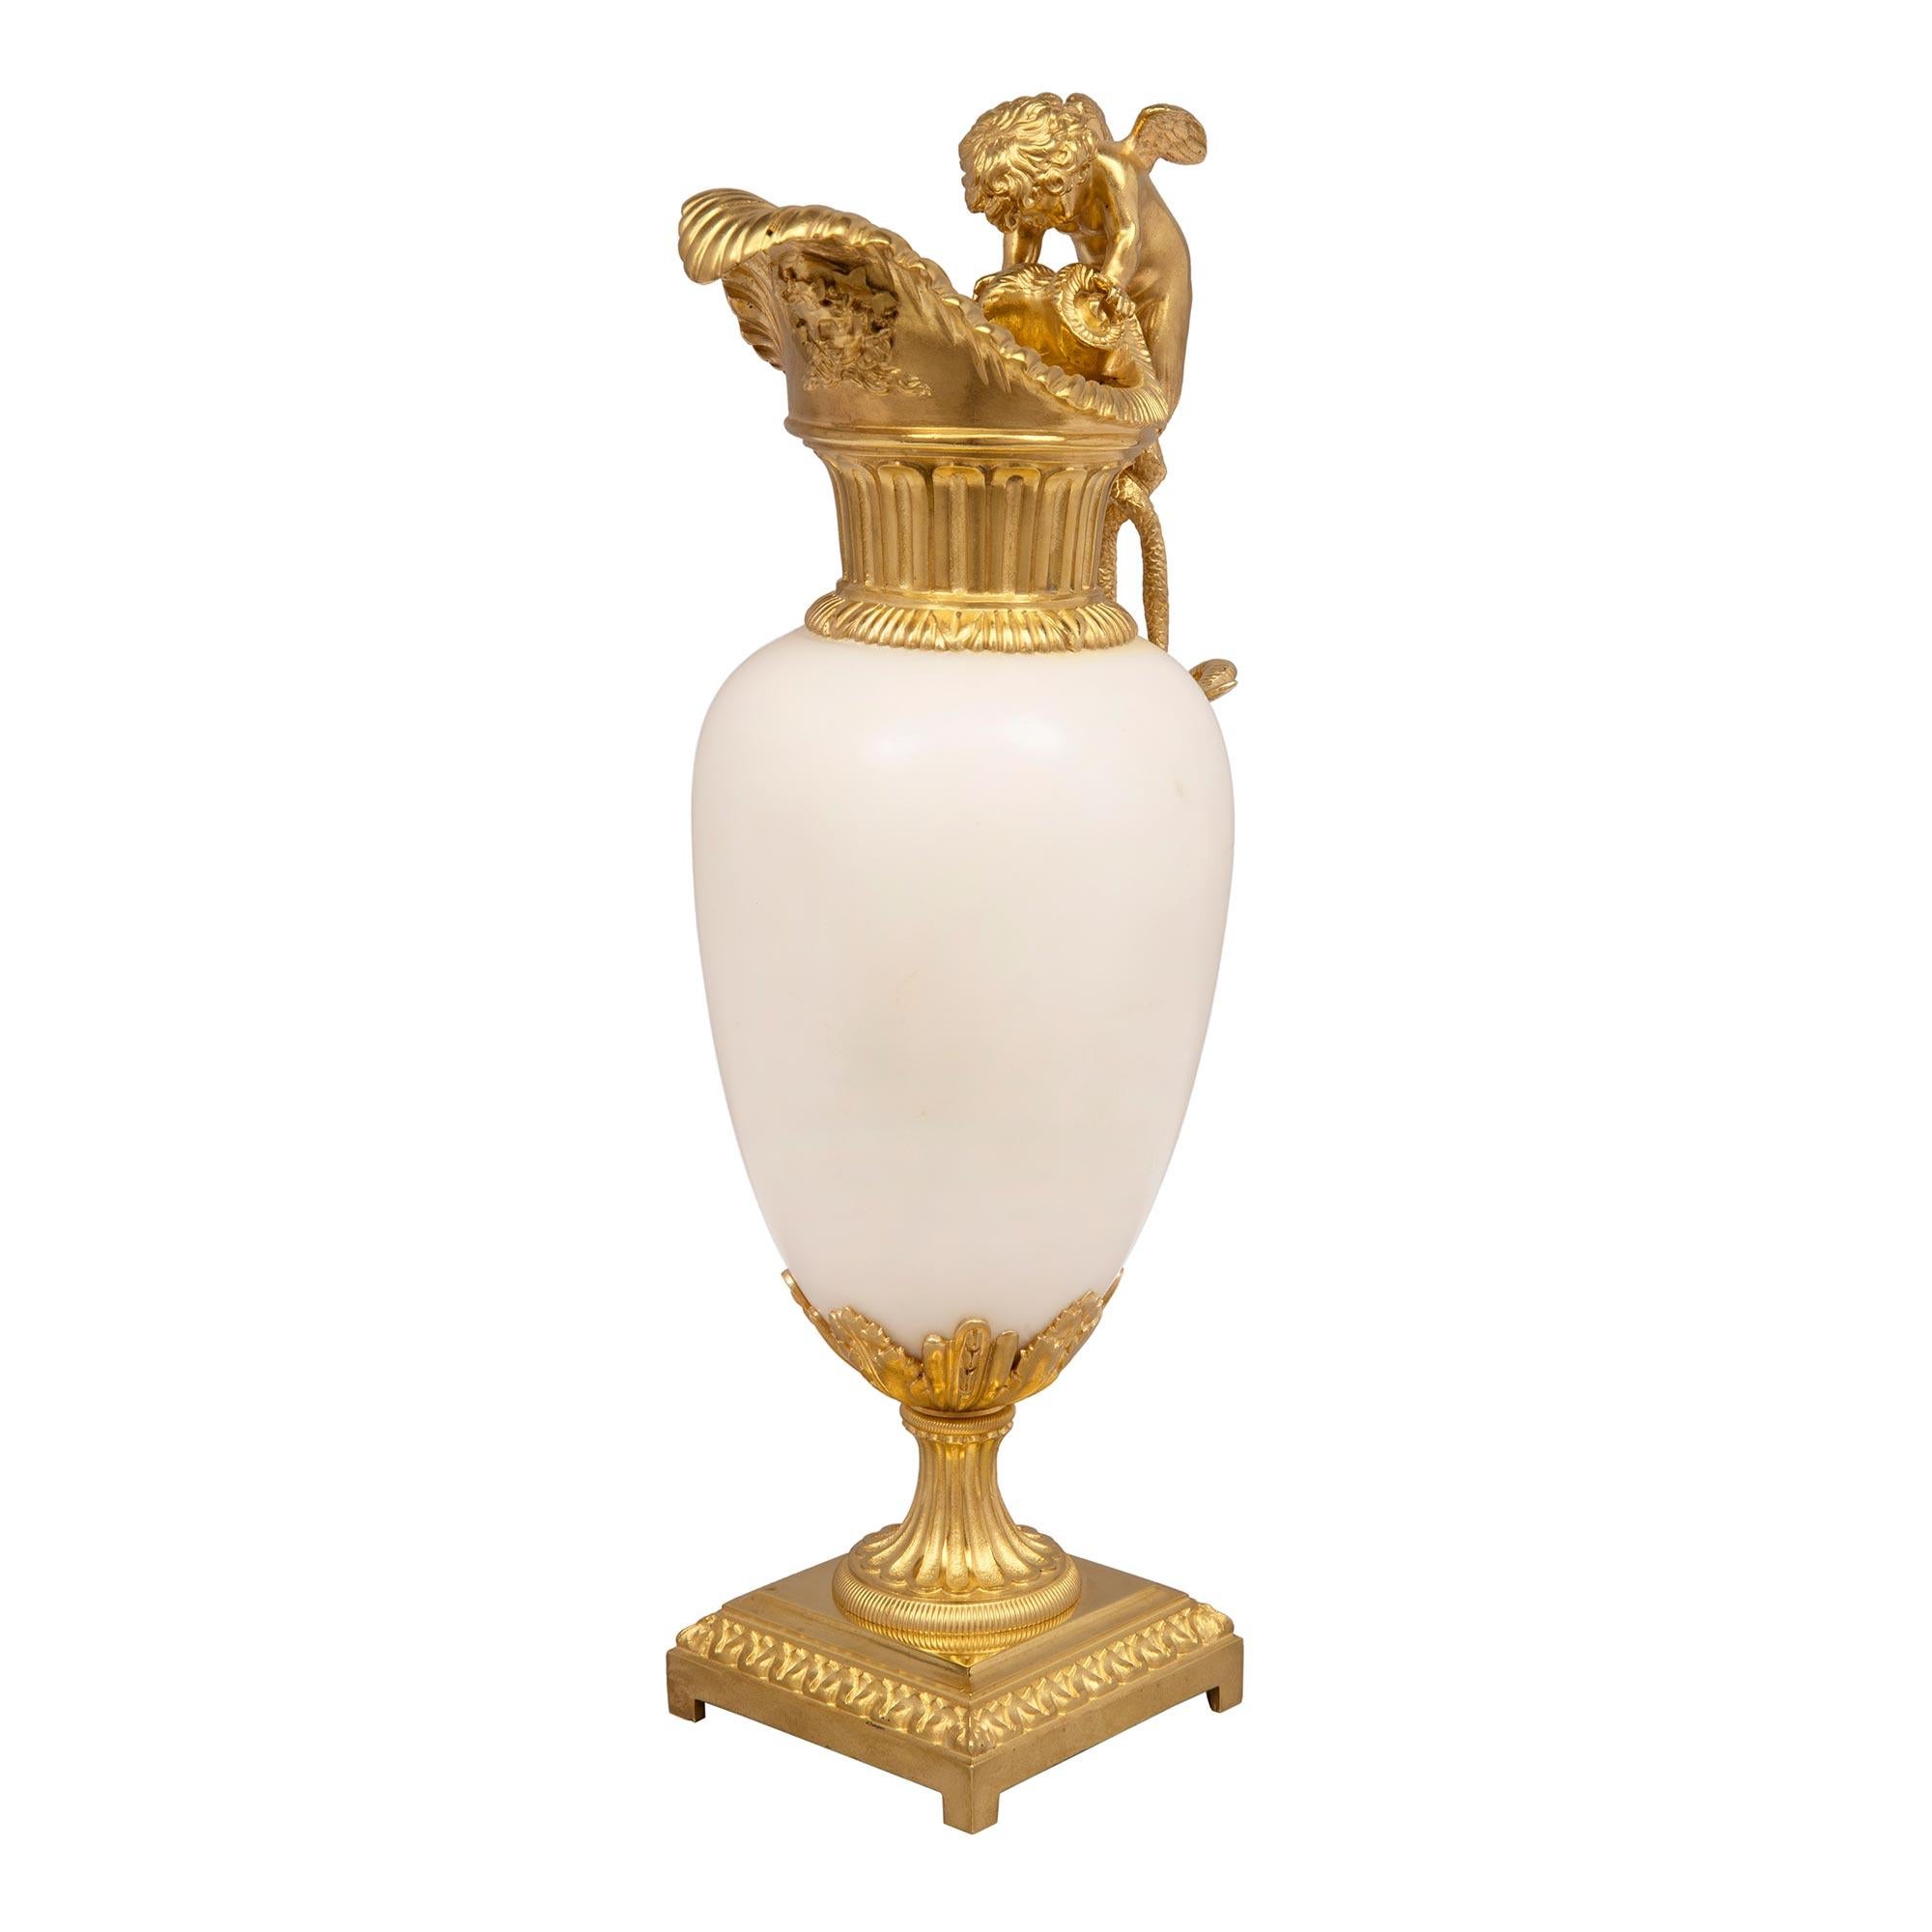 Superbe paire d'aiguières en marbre blanc de carrare et bronze doré de style Louis XVI du XIXe siècle, attribuée à Henry Dasson. Chaque aiguière est surmontée d'une base carrée en bronze doré, avec de fins pieds en bloc et un bandeau de feuillage.